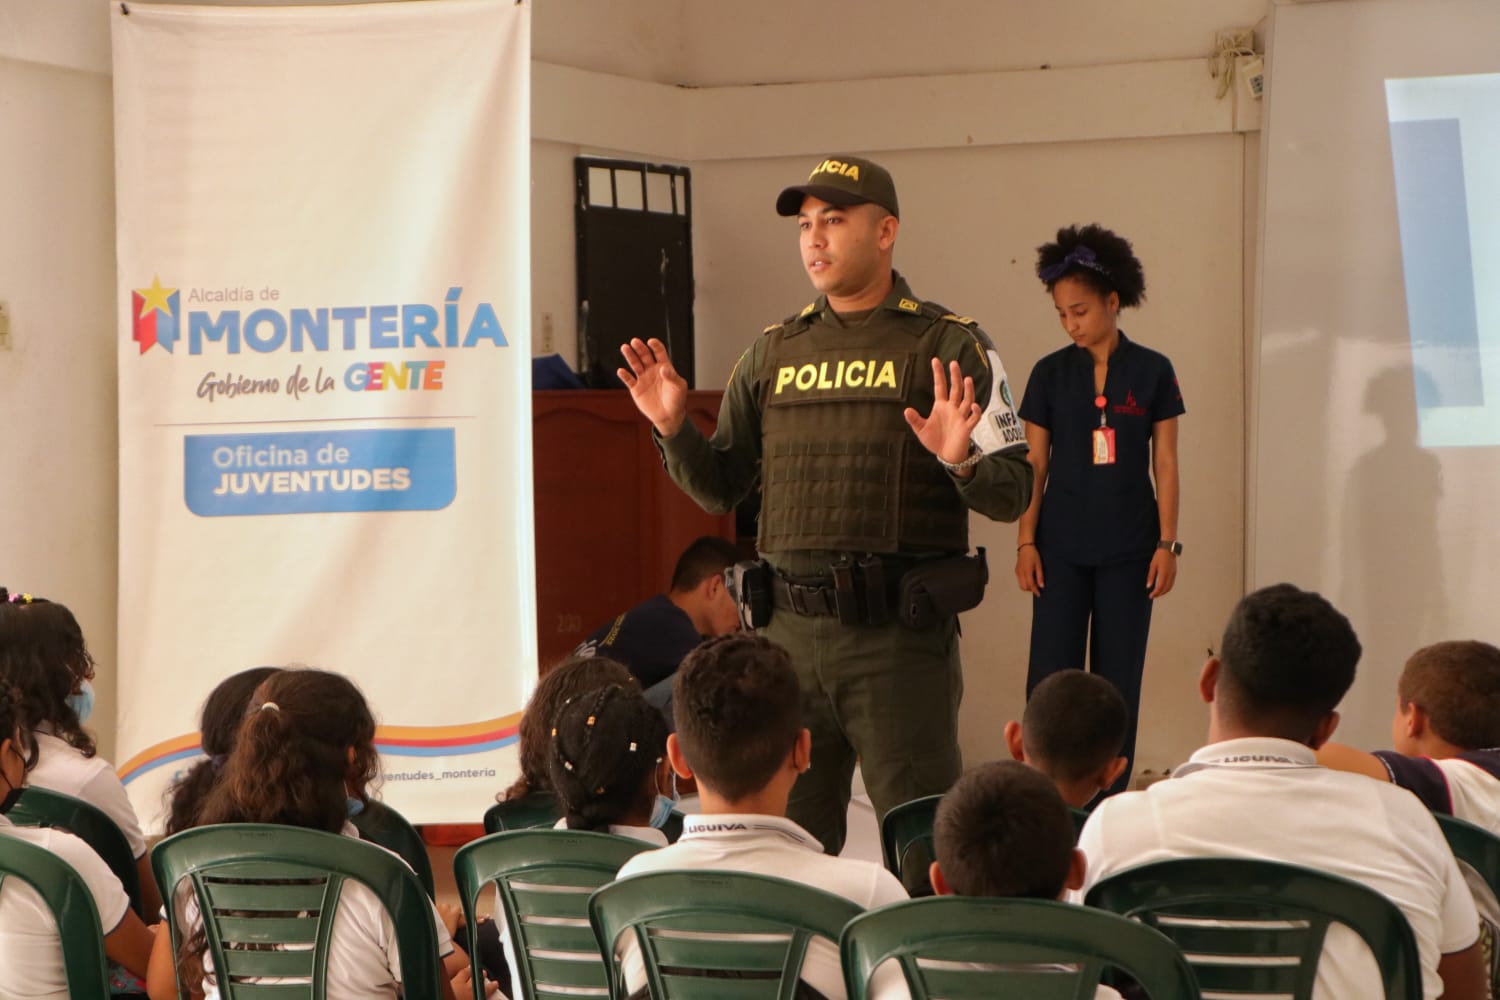 Territorios libres de bullying: así inició la Semana de la Juventud en Montería